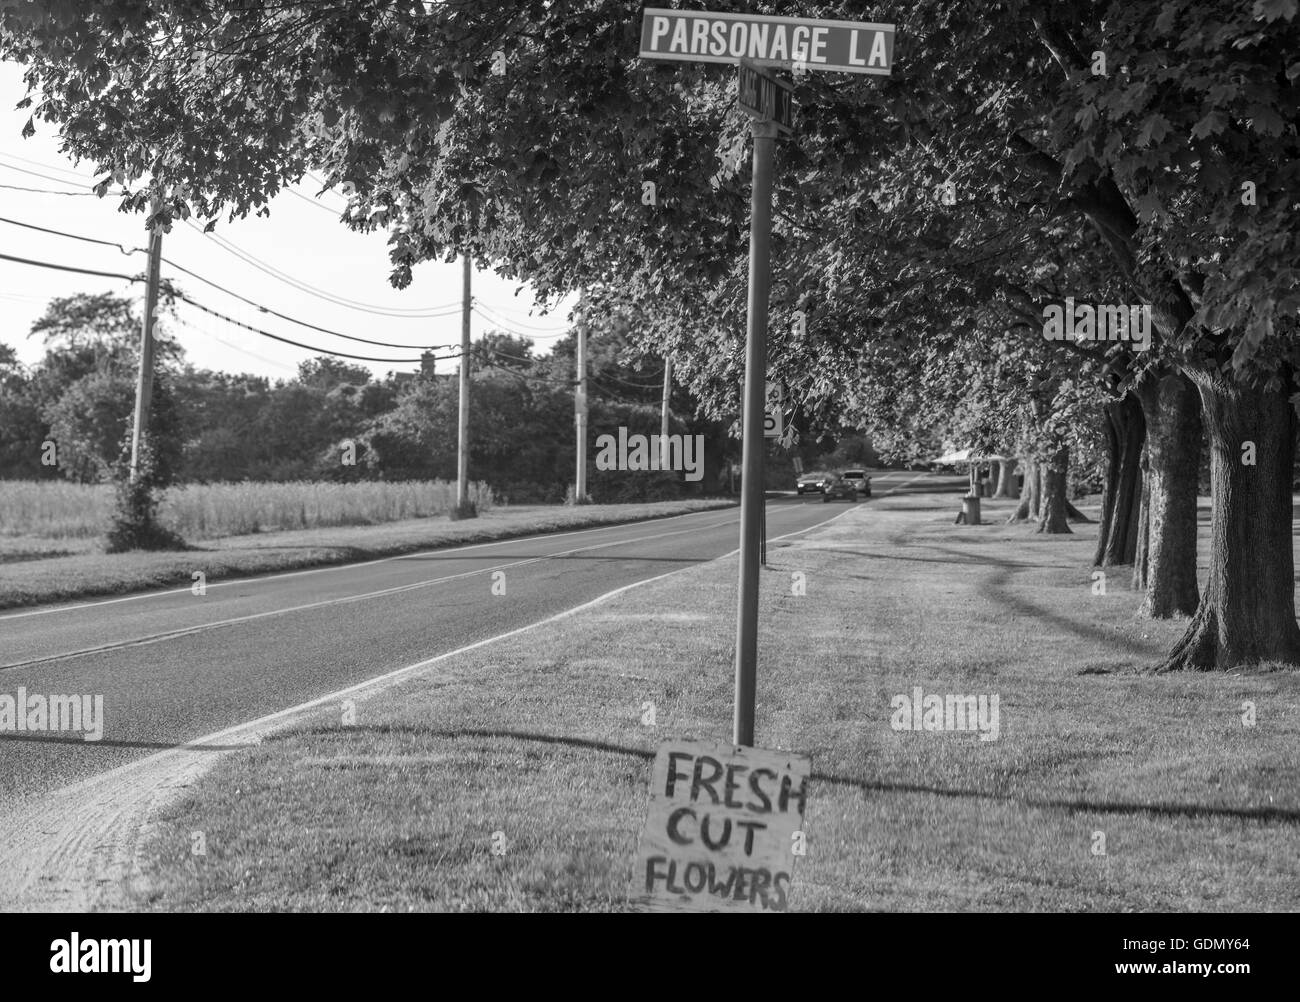 Straßenschild, Pfarrhaus Lane, mit einer Hand machte Zeichen lehnt sich an die Wegweiser Werbung frische Schnittblumen Stockfoto